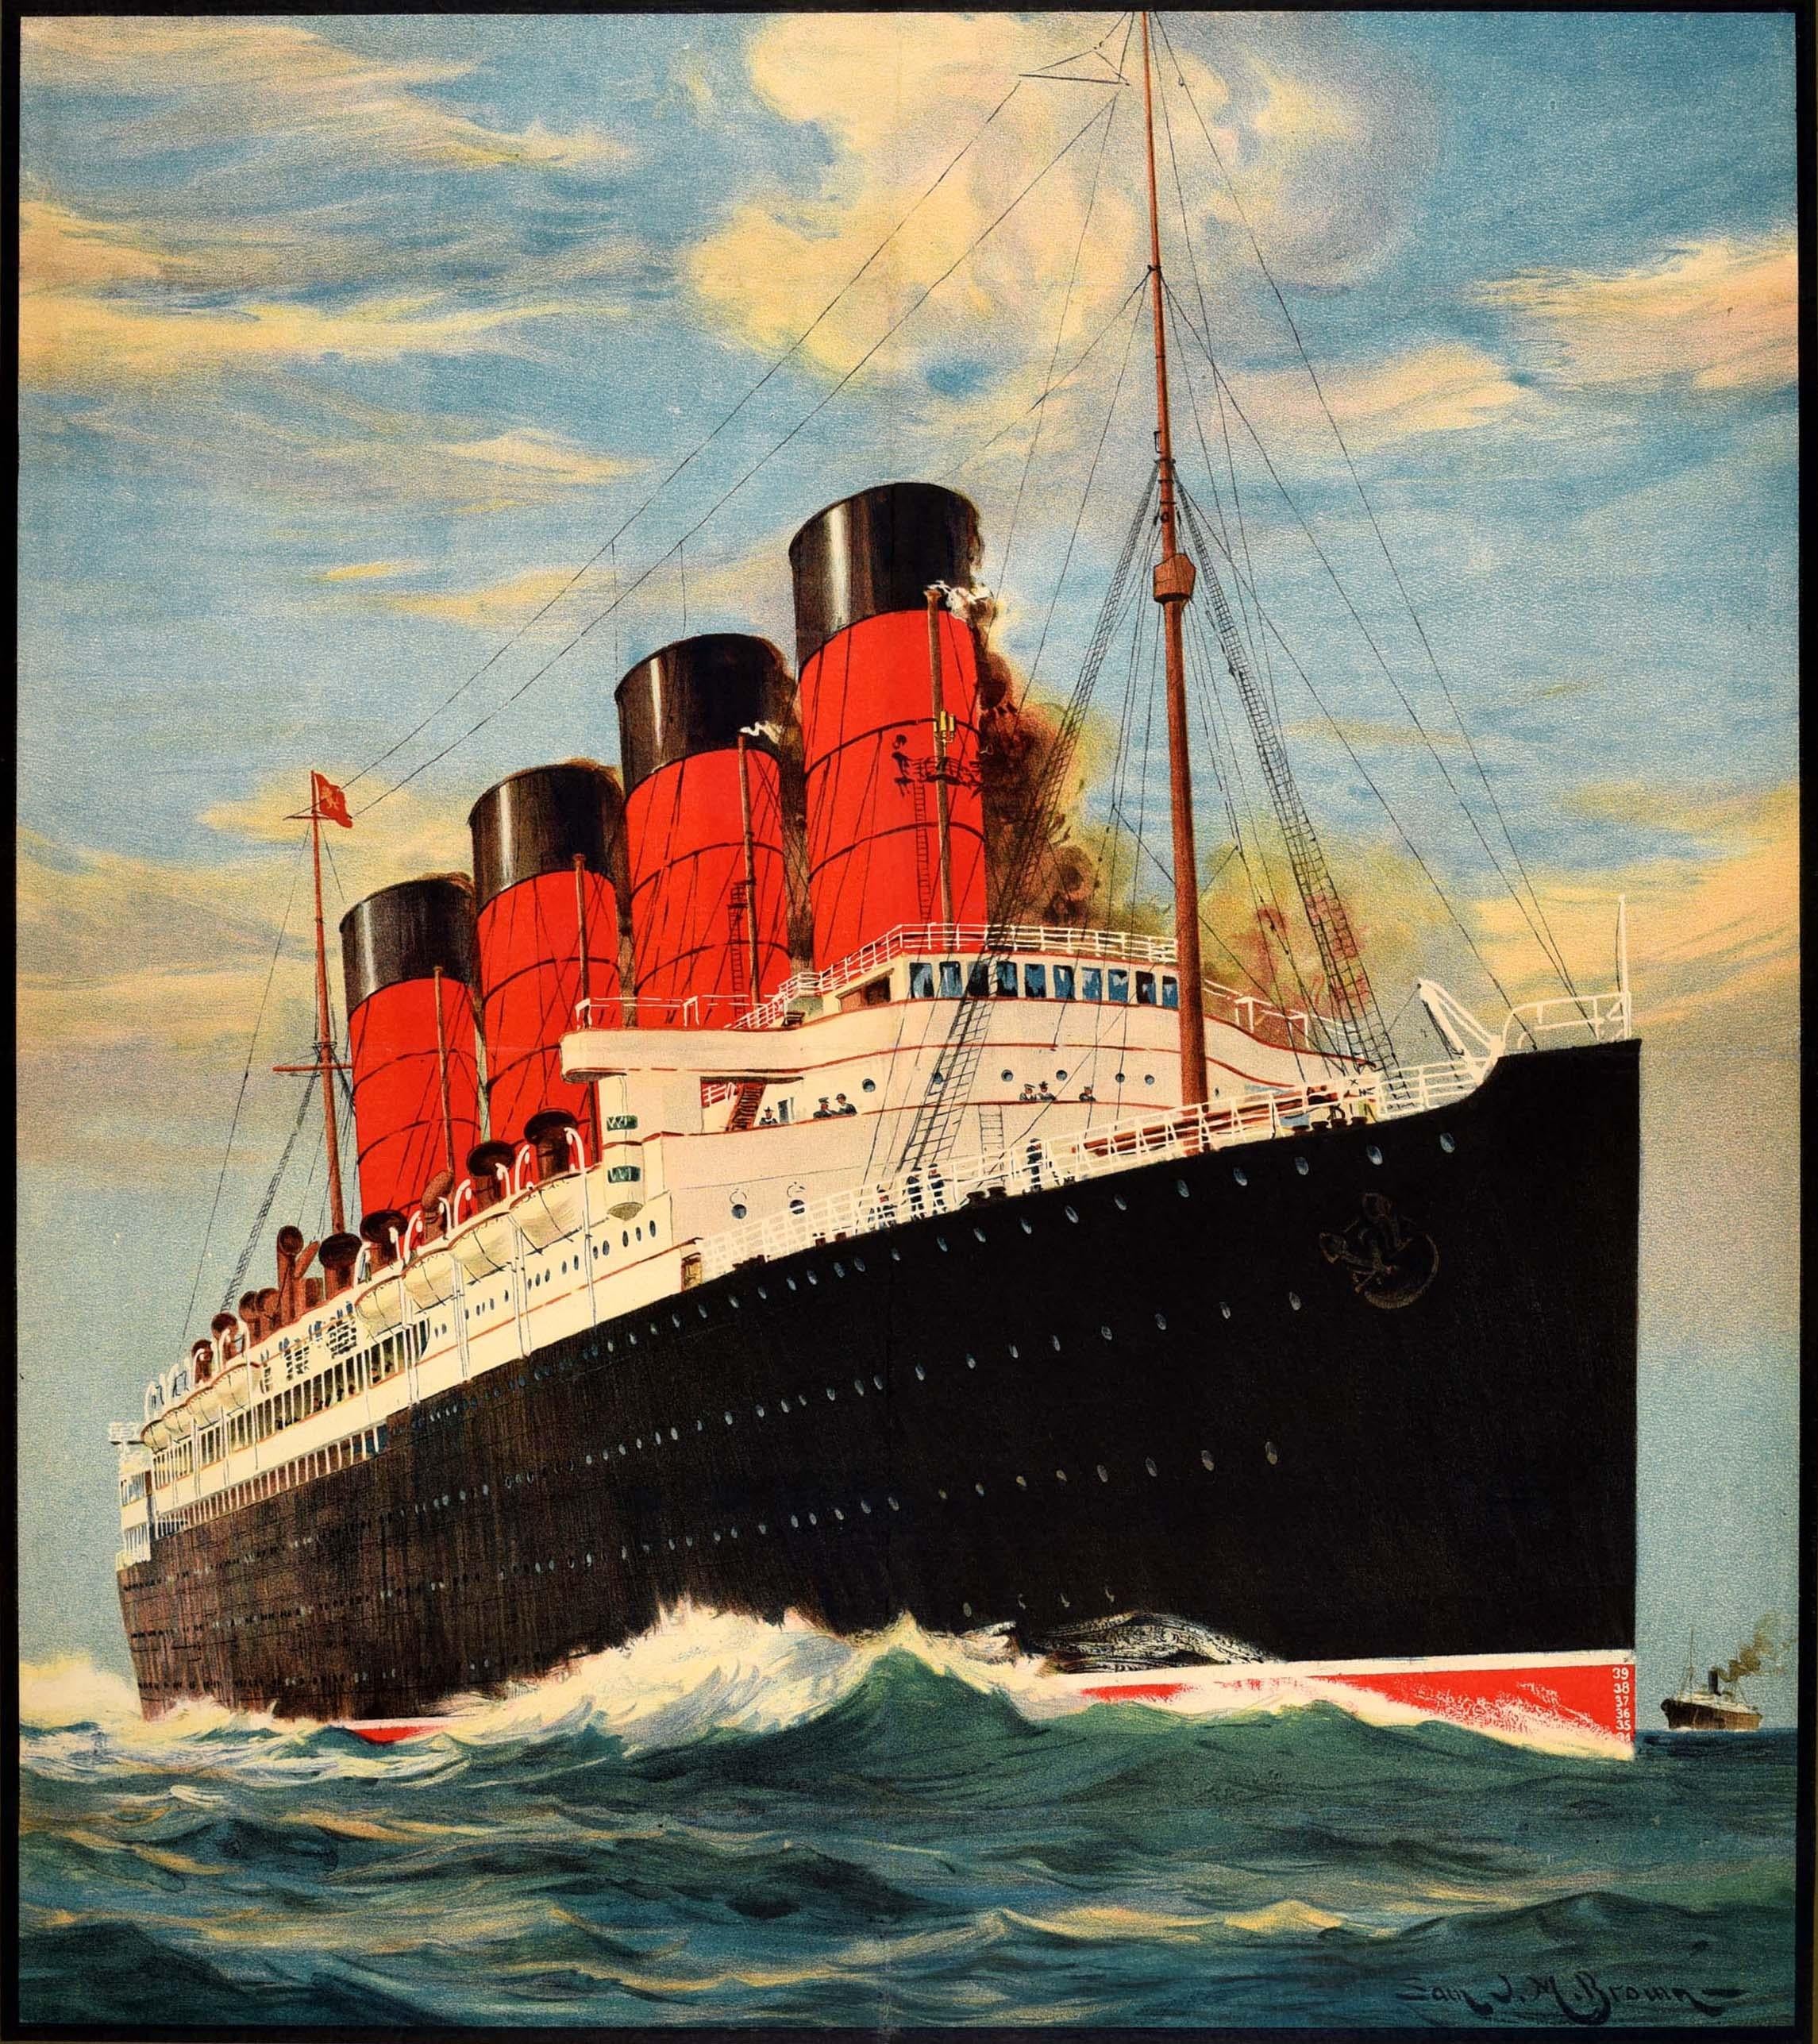 Original Vintage Travel Advertising Poster Cunard Line Europe America Cruise - Print by Samuel John Milton Brown